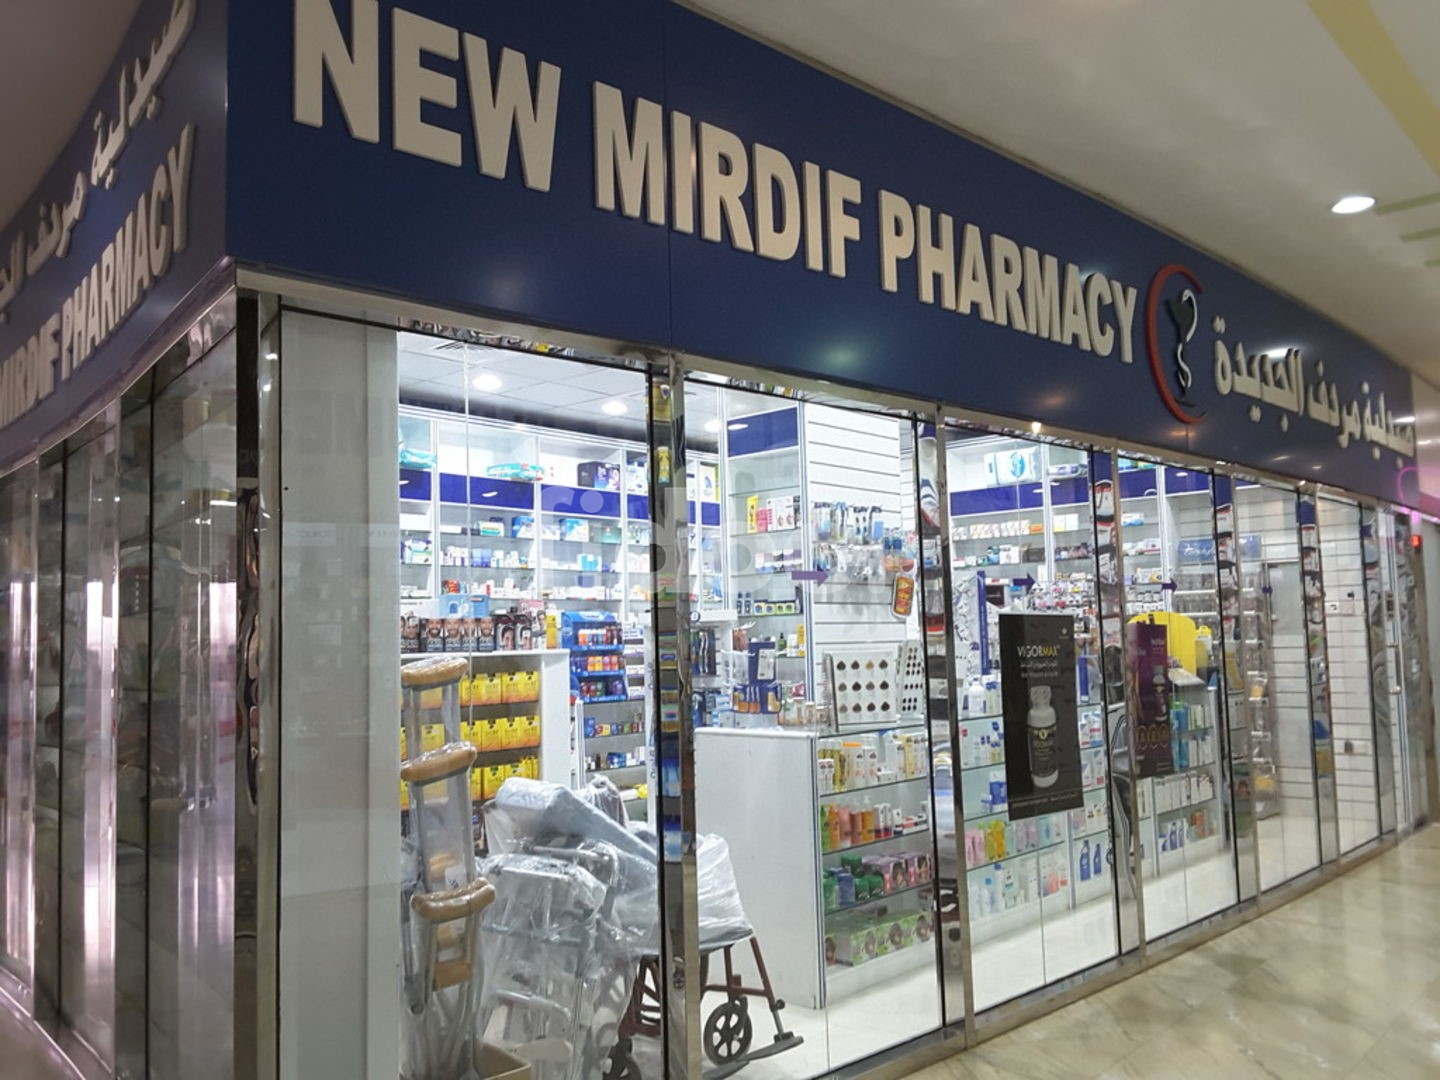 New Mirdif Pharmacy, Dubai